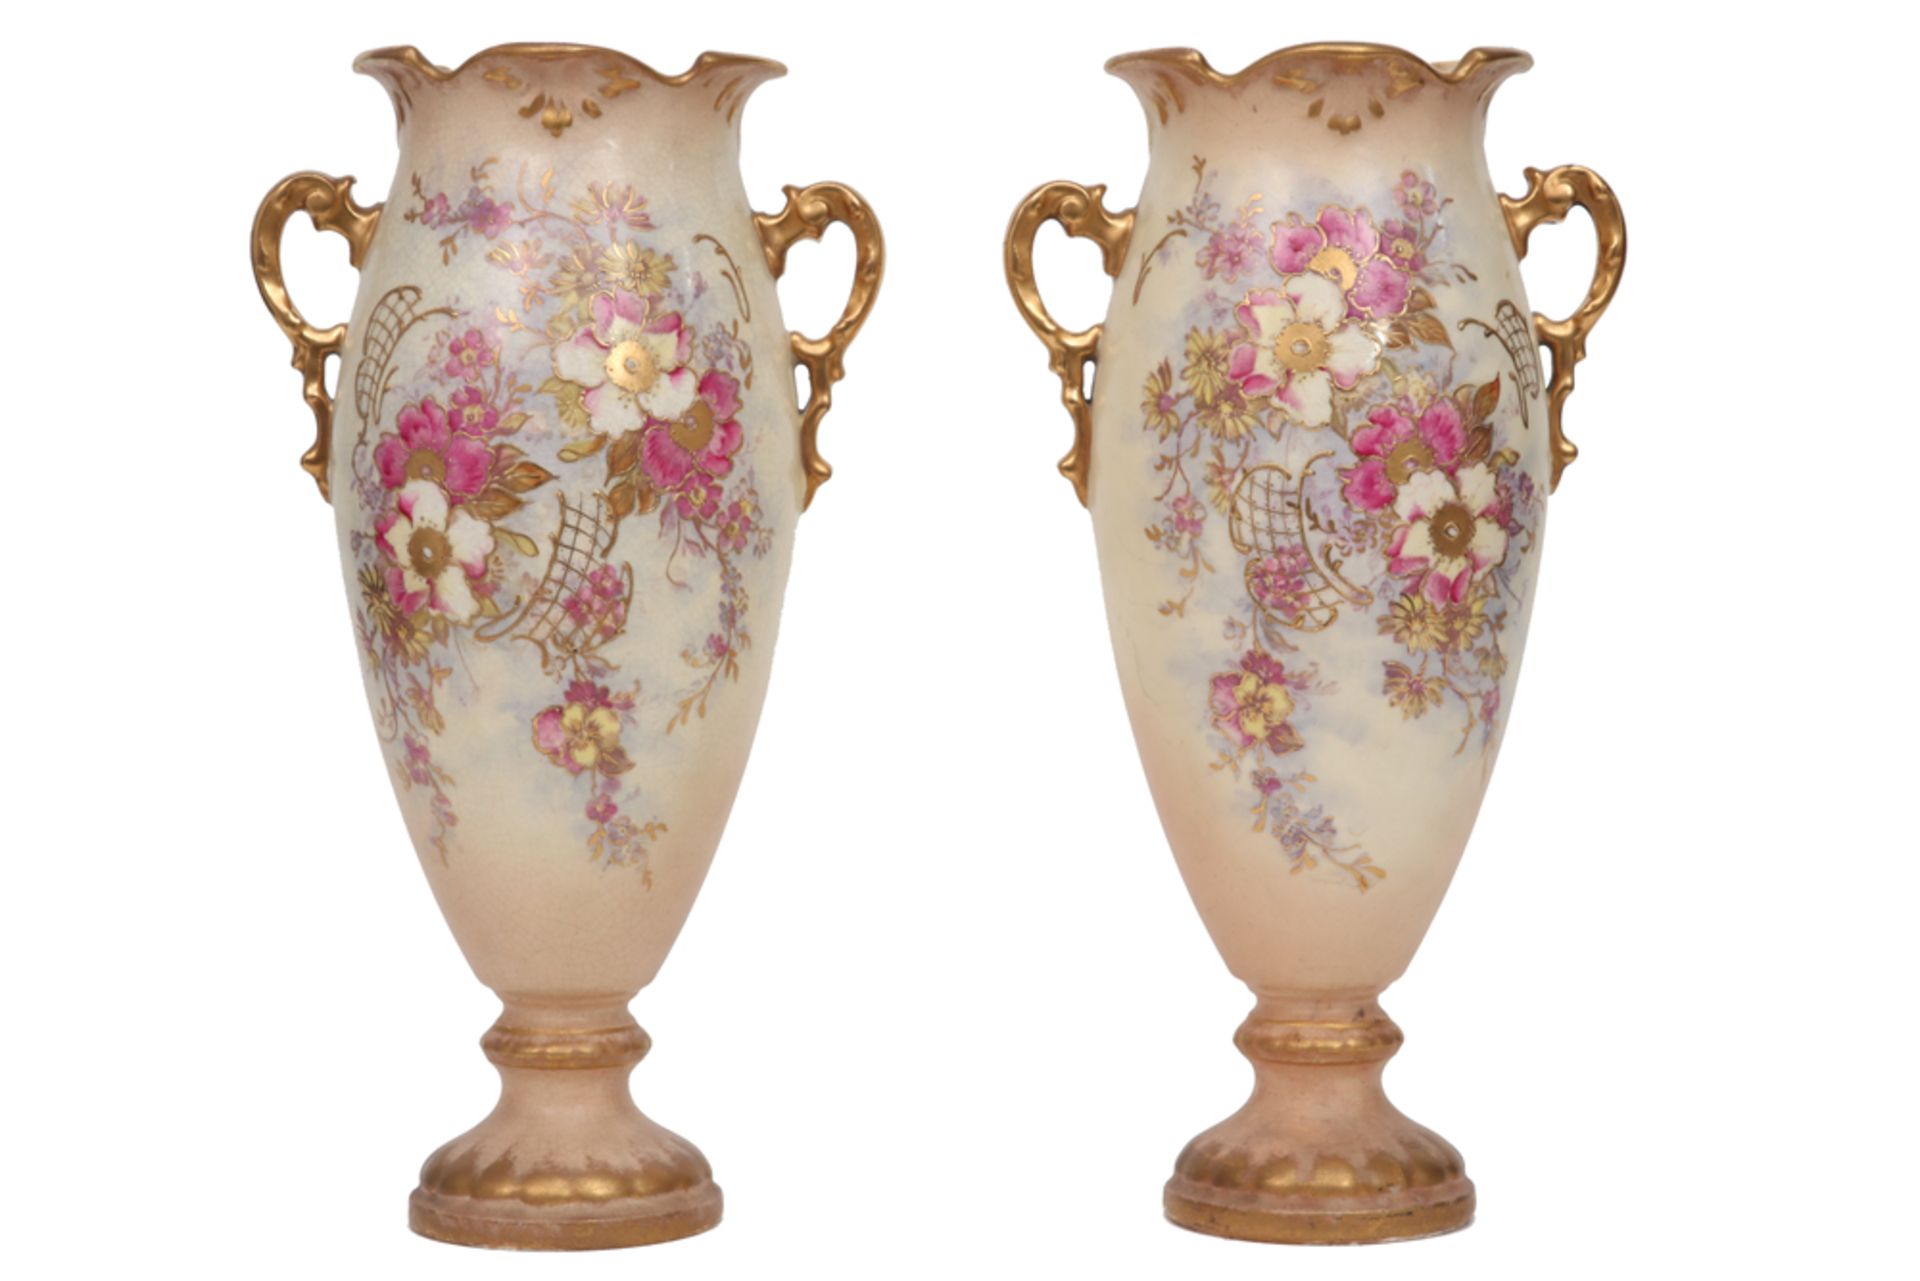 pair of late 19th Cent. vases in marked ceramic || Paar laat negentiende eeuwse vazen in gemerkt